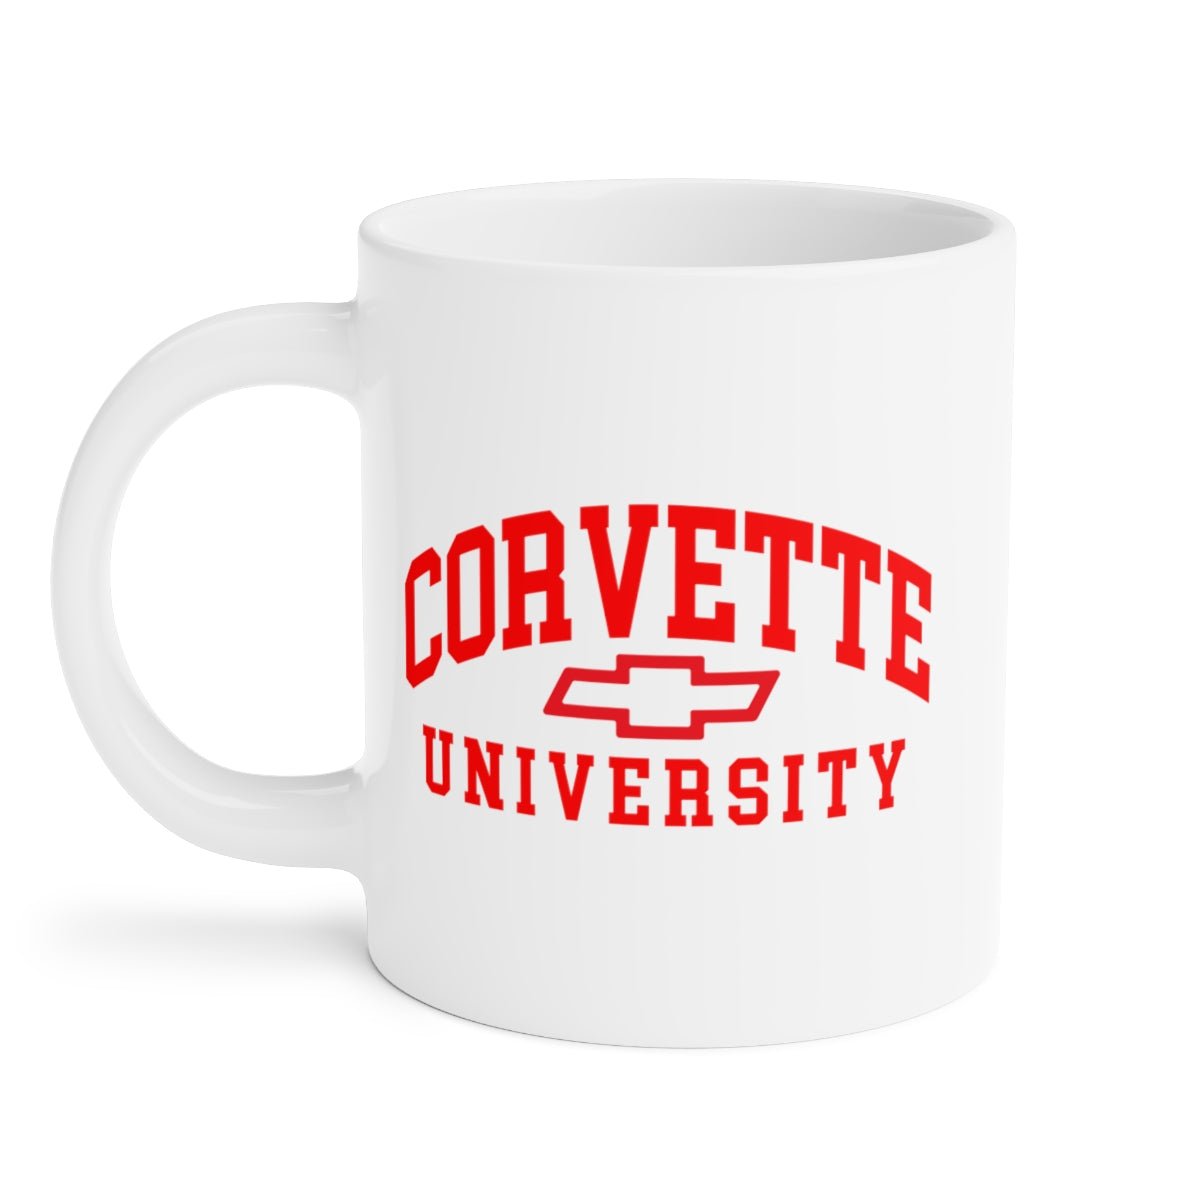 Corvette University Coffee Mug 11oz, 15oz, 20oz - Vette1 - Corvette U. Coffee Mugs